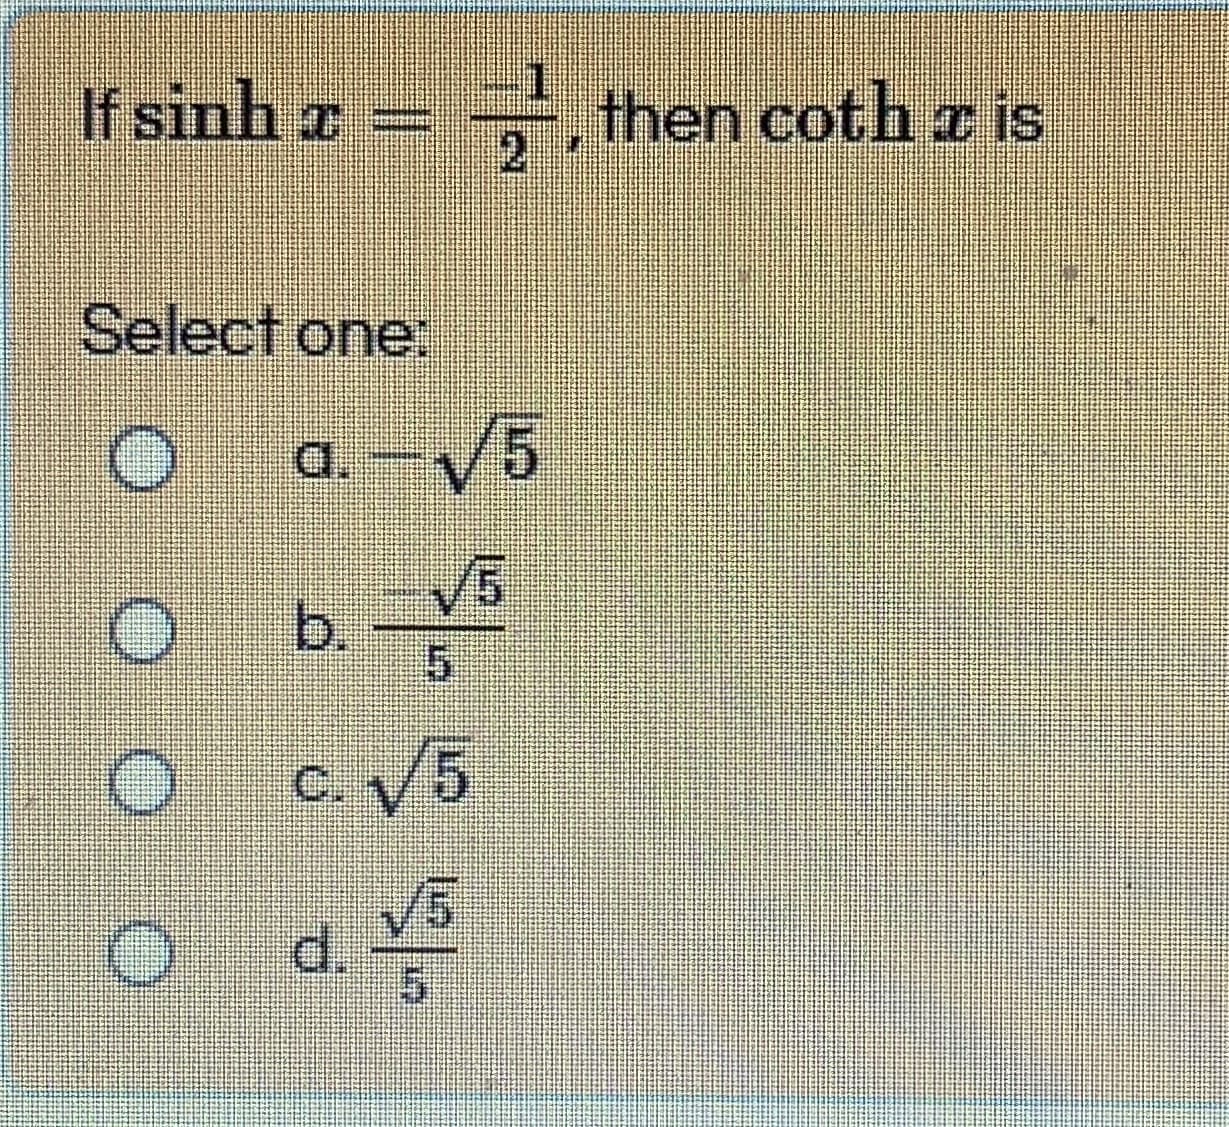 If sinh a
x =
, then coth z is
2
Select one:
a. –/5
V5
b.
C. V5
V5
d.
